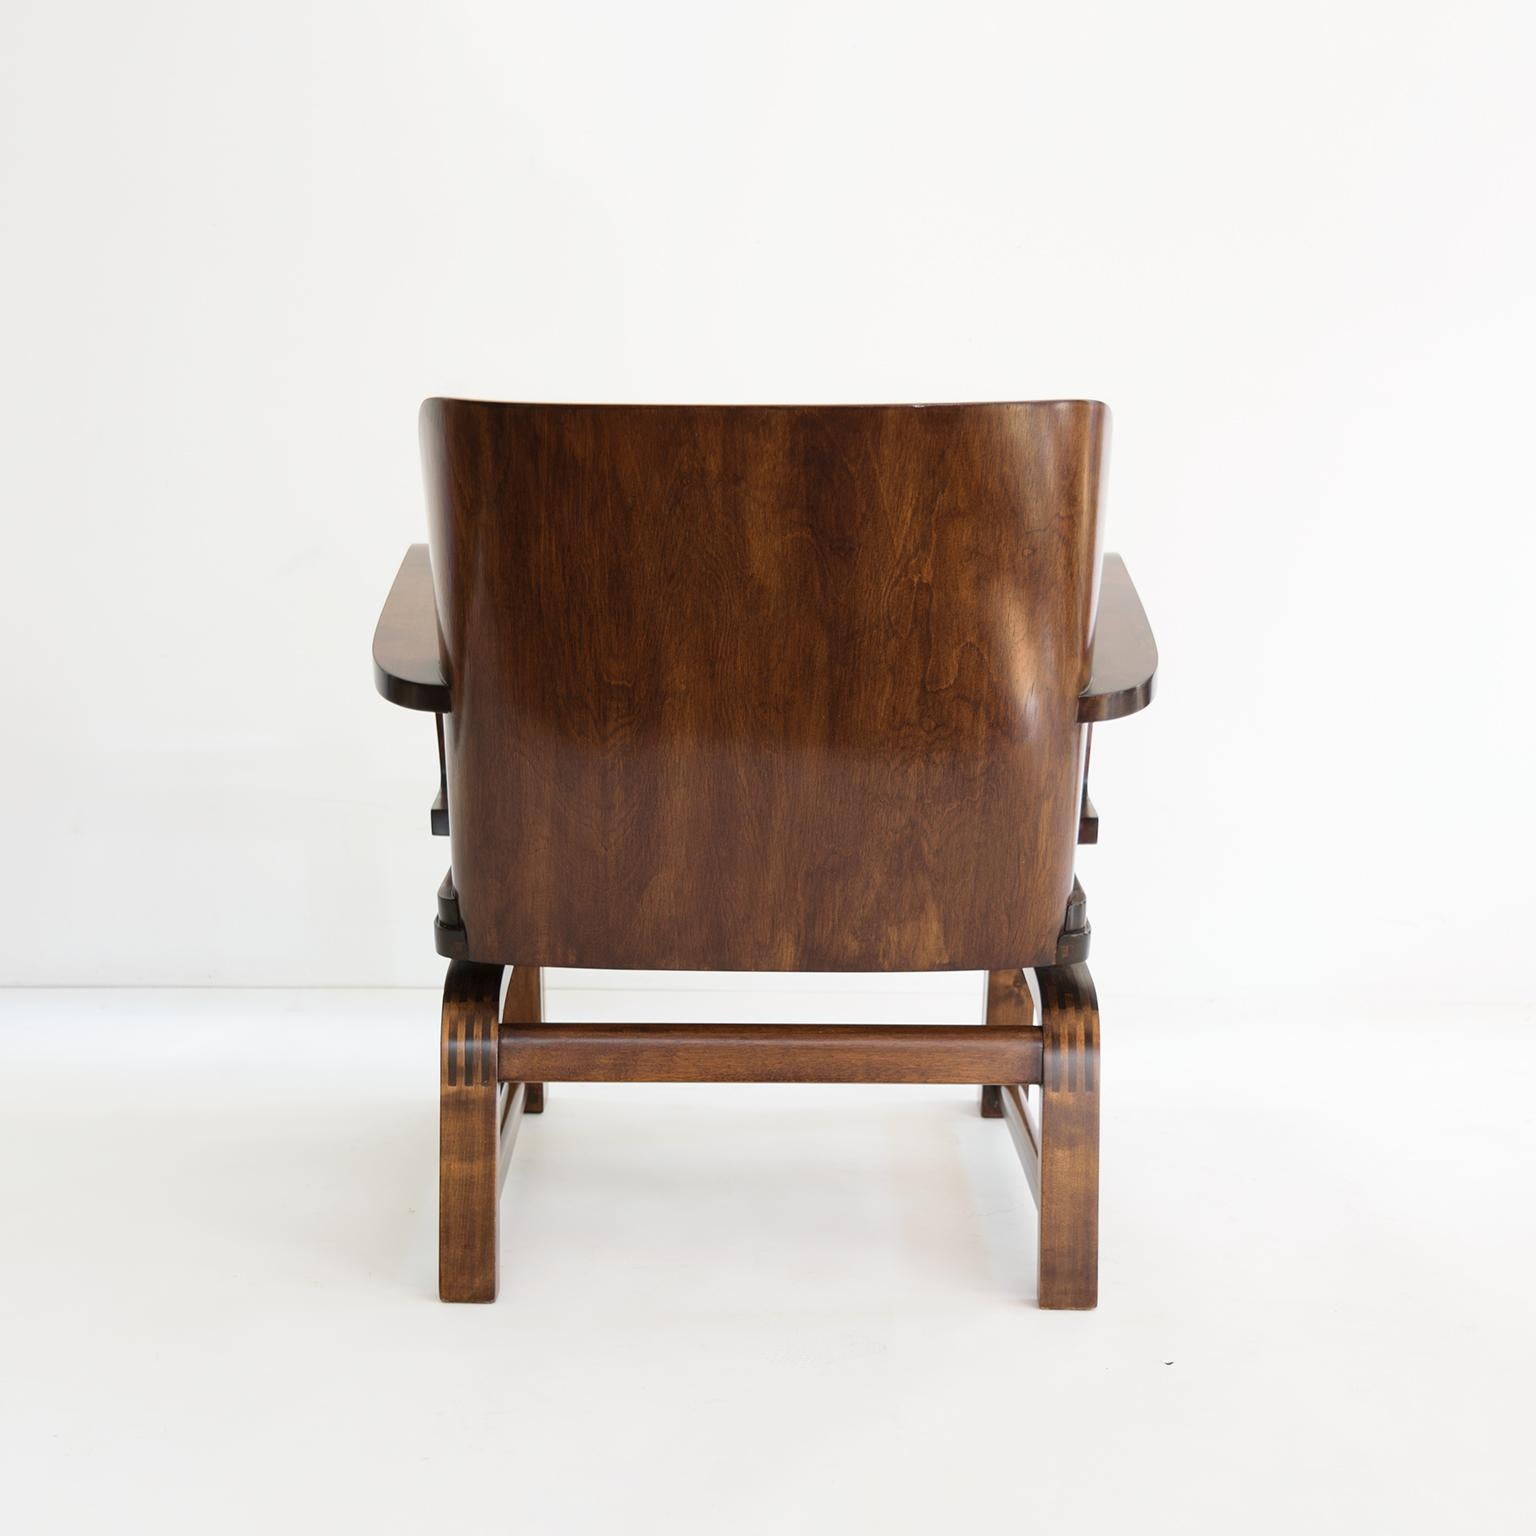 Poli Exceptionnelle « chaise exceptionnelle » de Carl-Johan Bowman, vers 1930, fabriquée pour N. Bomanin en vente